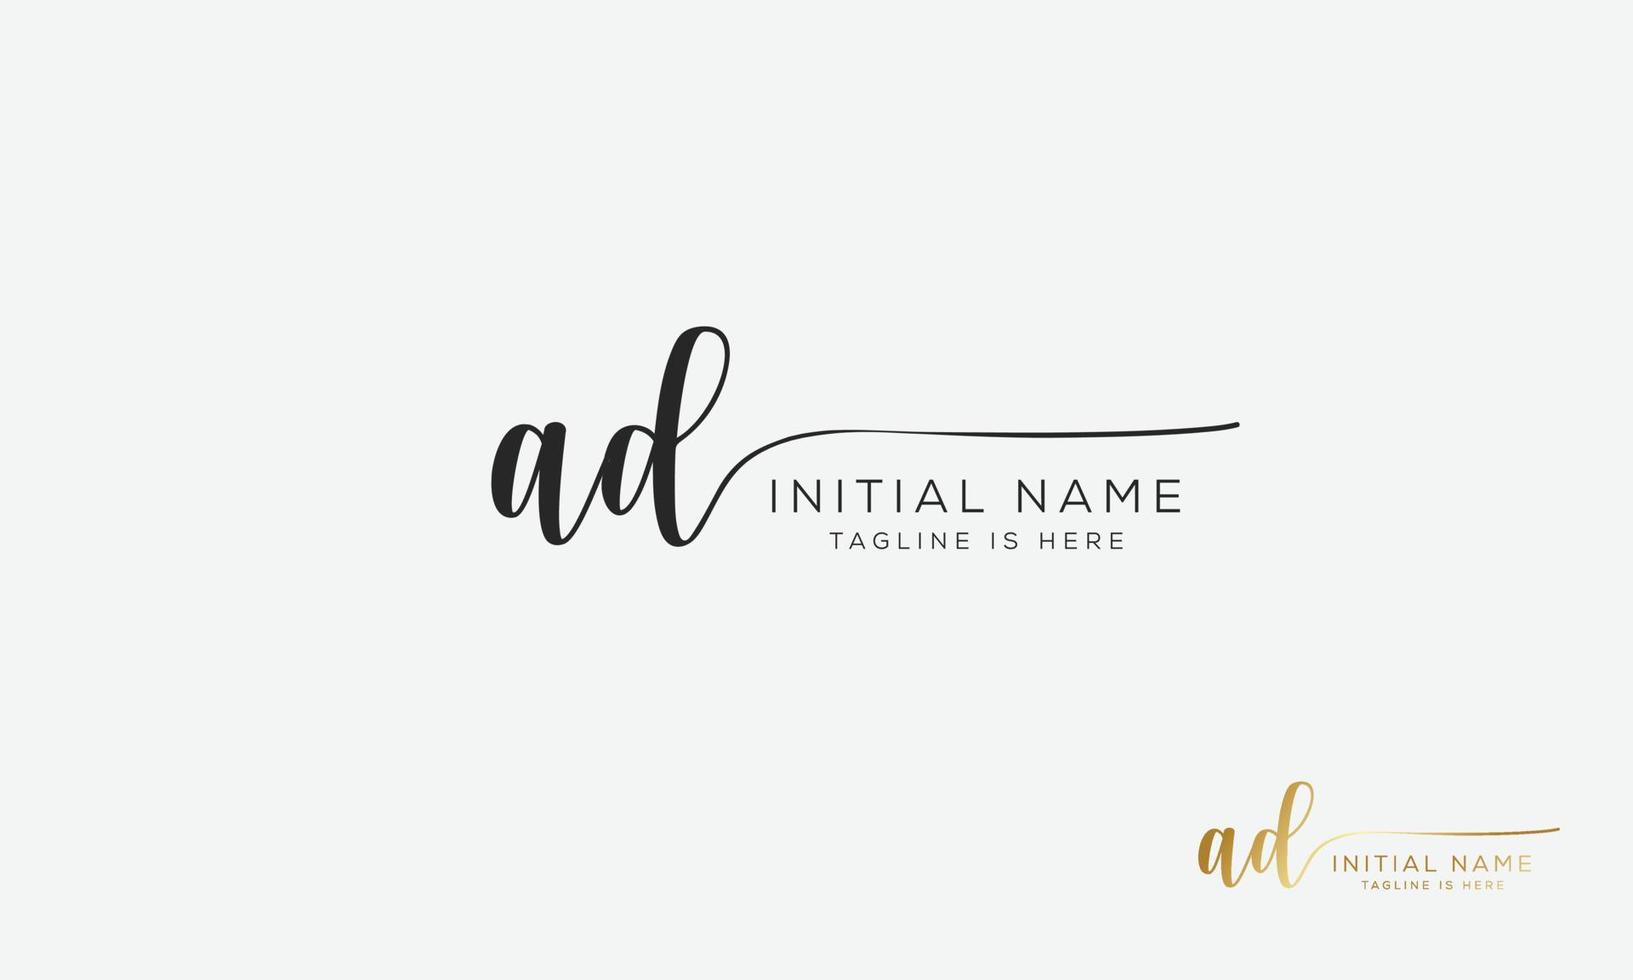 AD D A initial signature logo template. vector